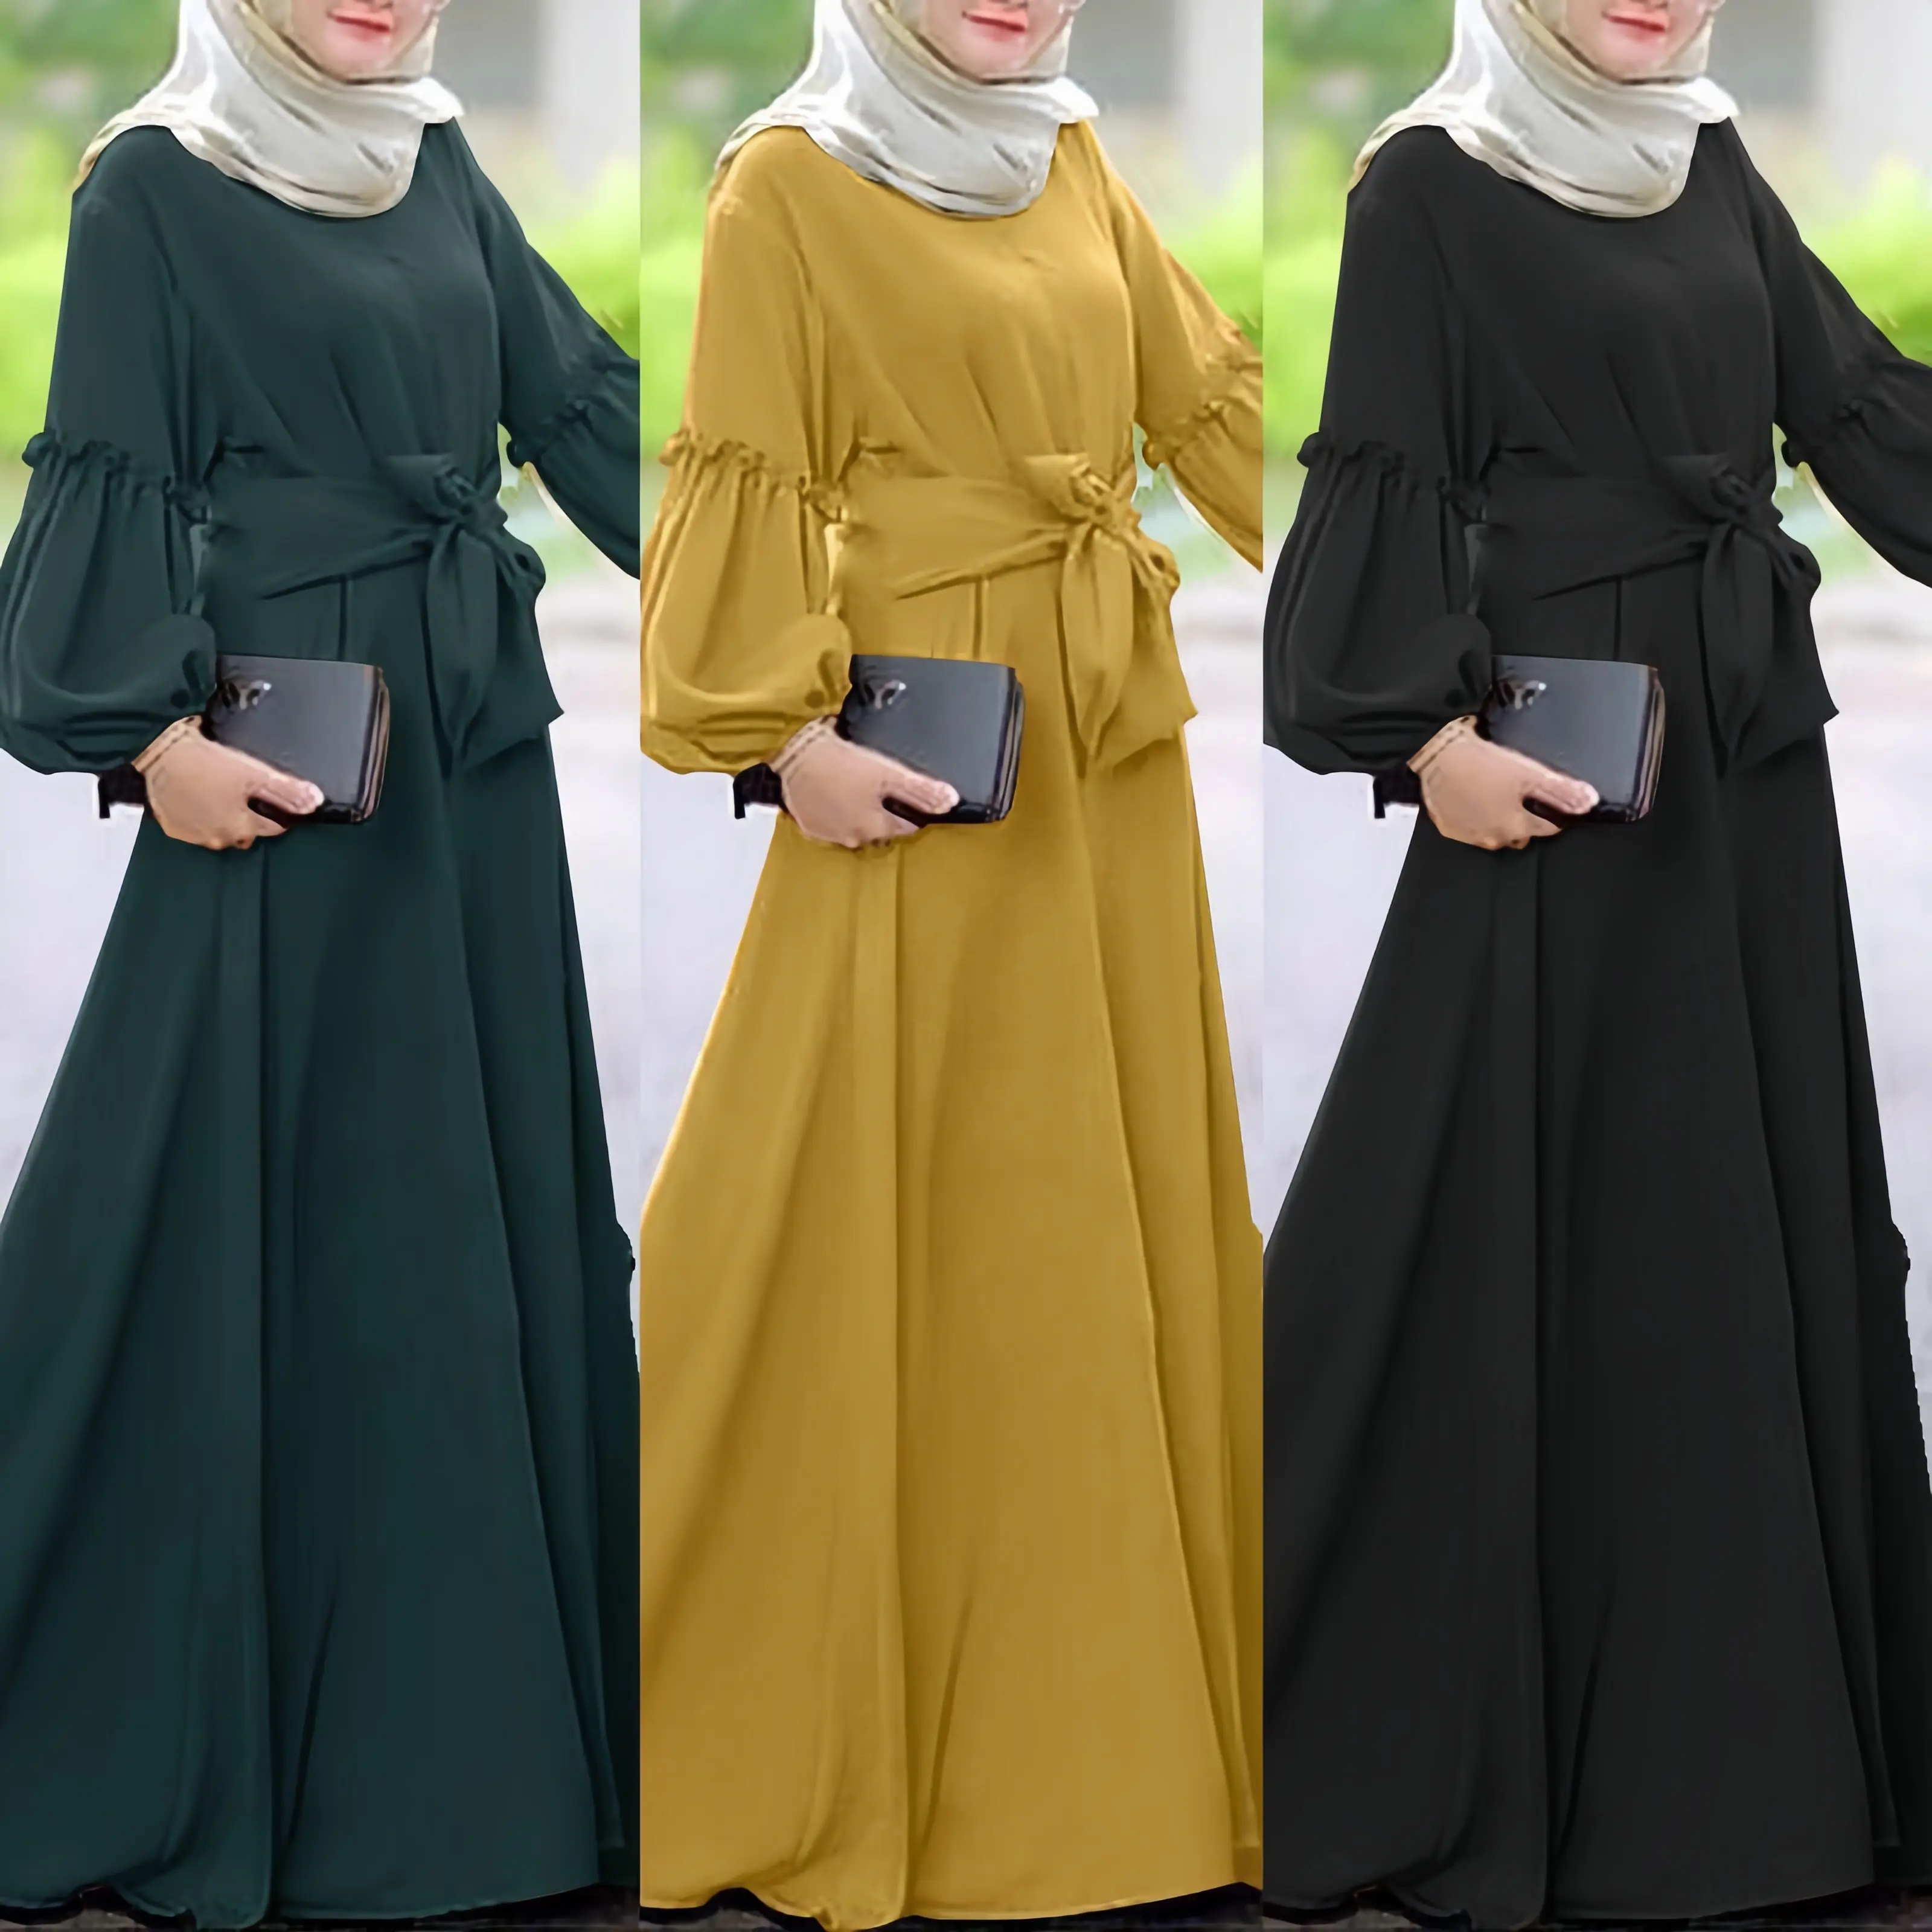 חדש אלגנטי ארוך שרוול ארוך העבאיה מוסלמי שמלות אופנה מקרית נשים מוסלמי שמלות